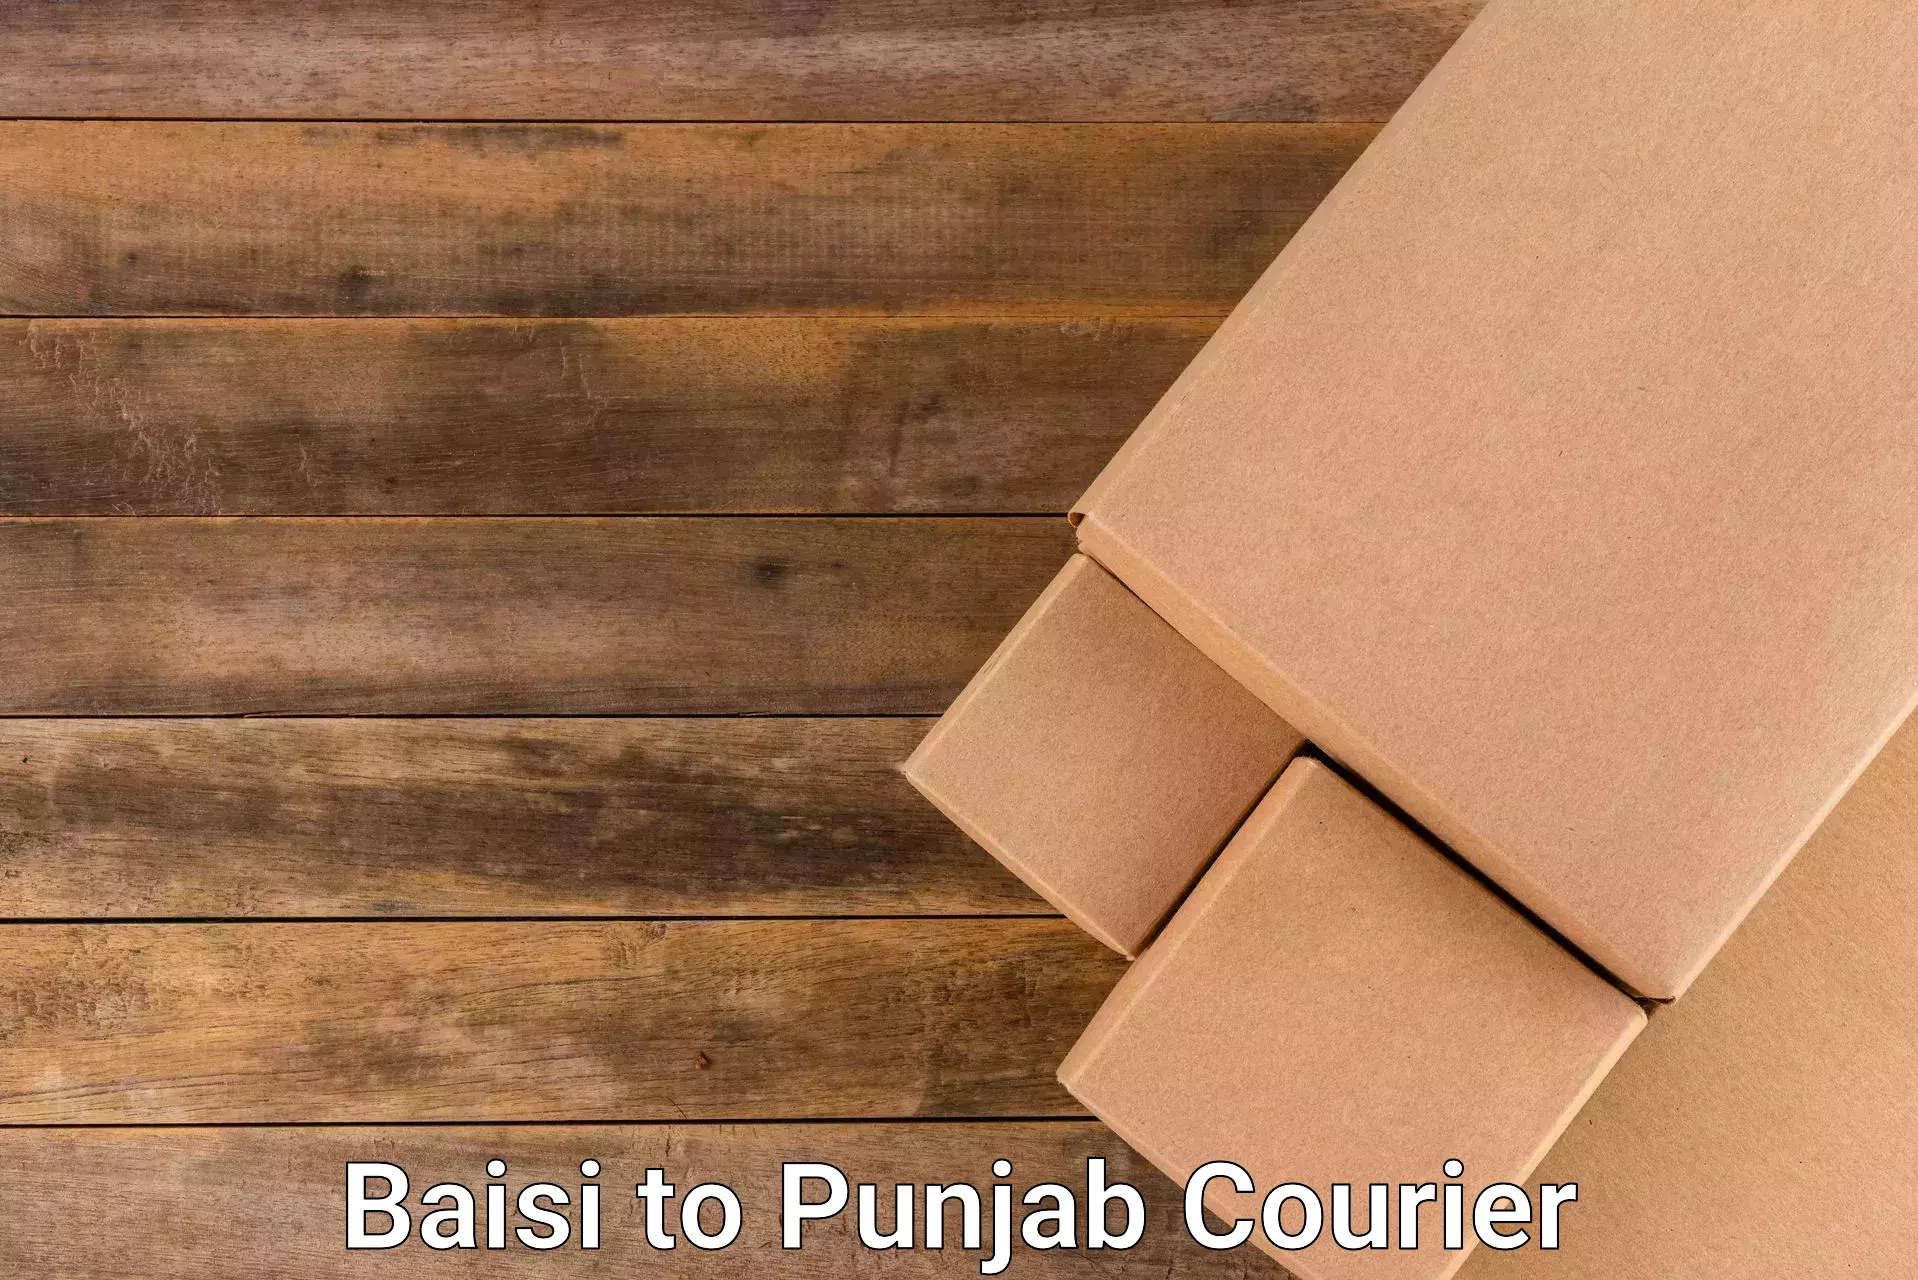 Courier service partnerships Baisi to Central University of Punjab Bathinda